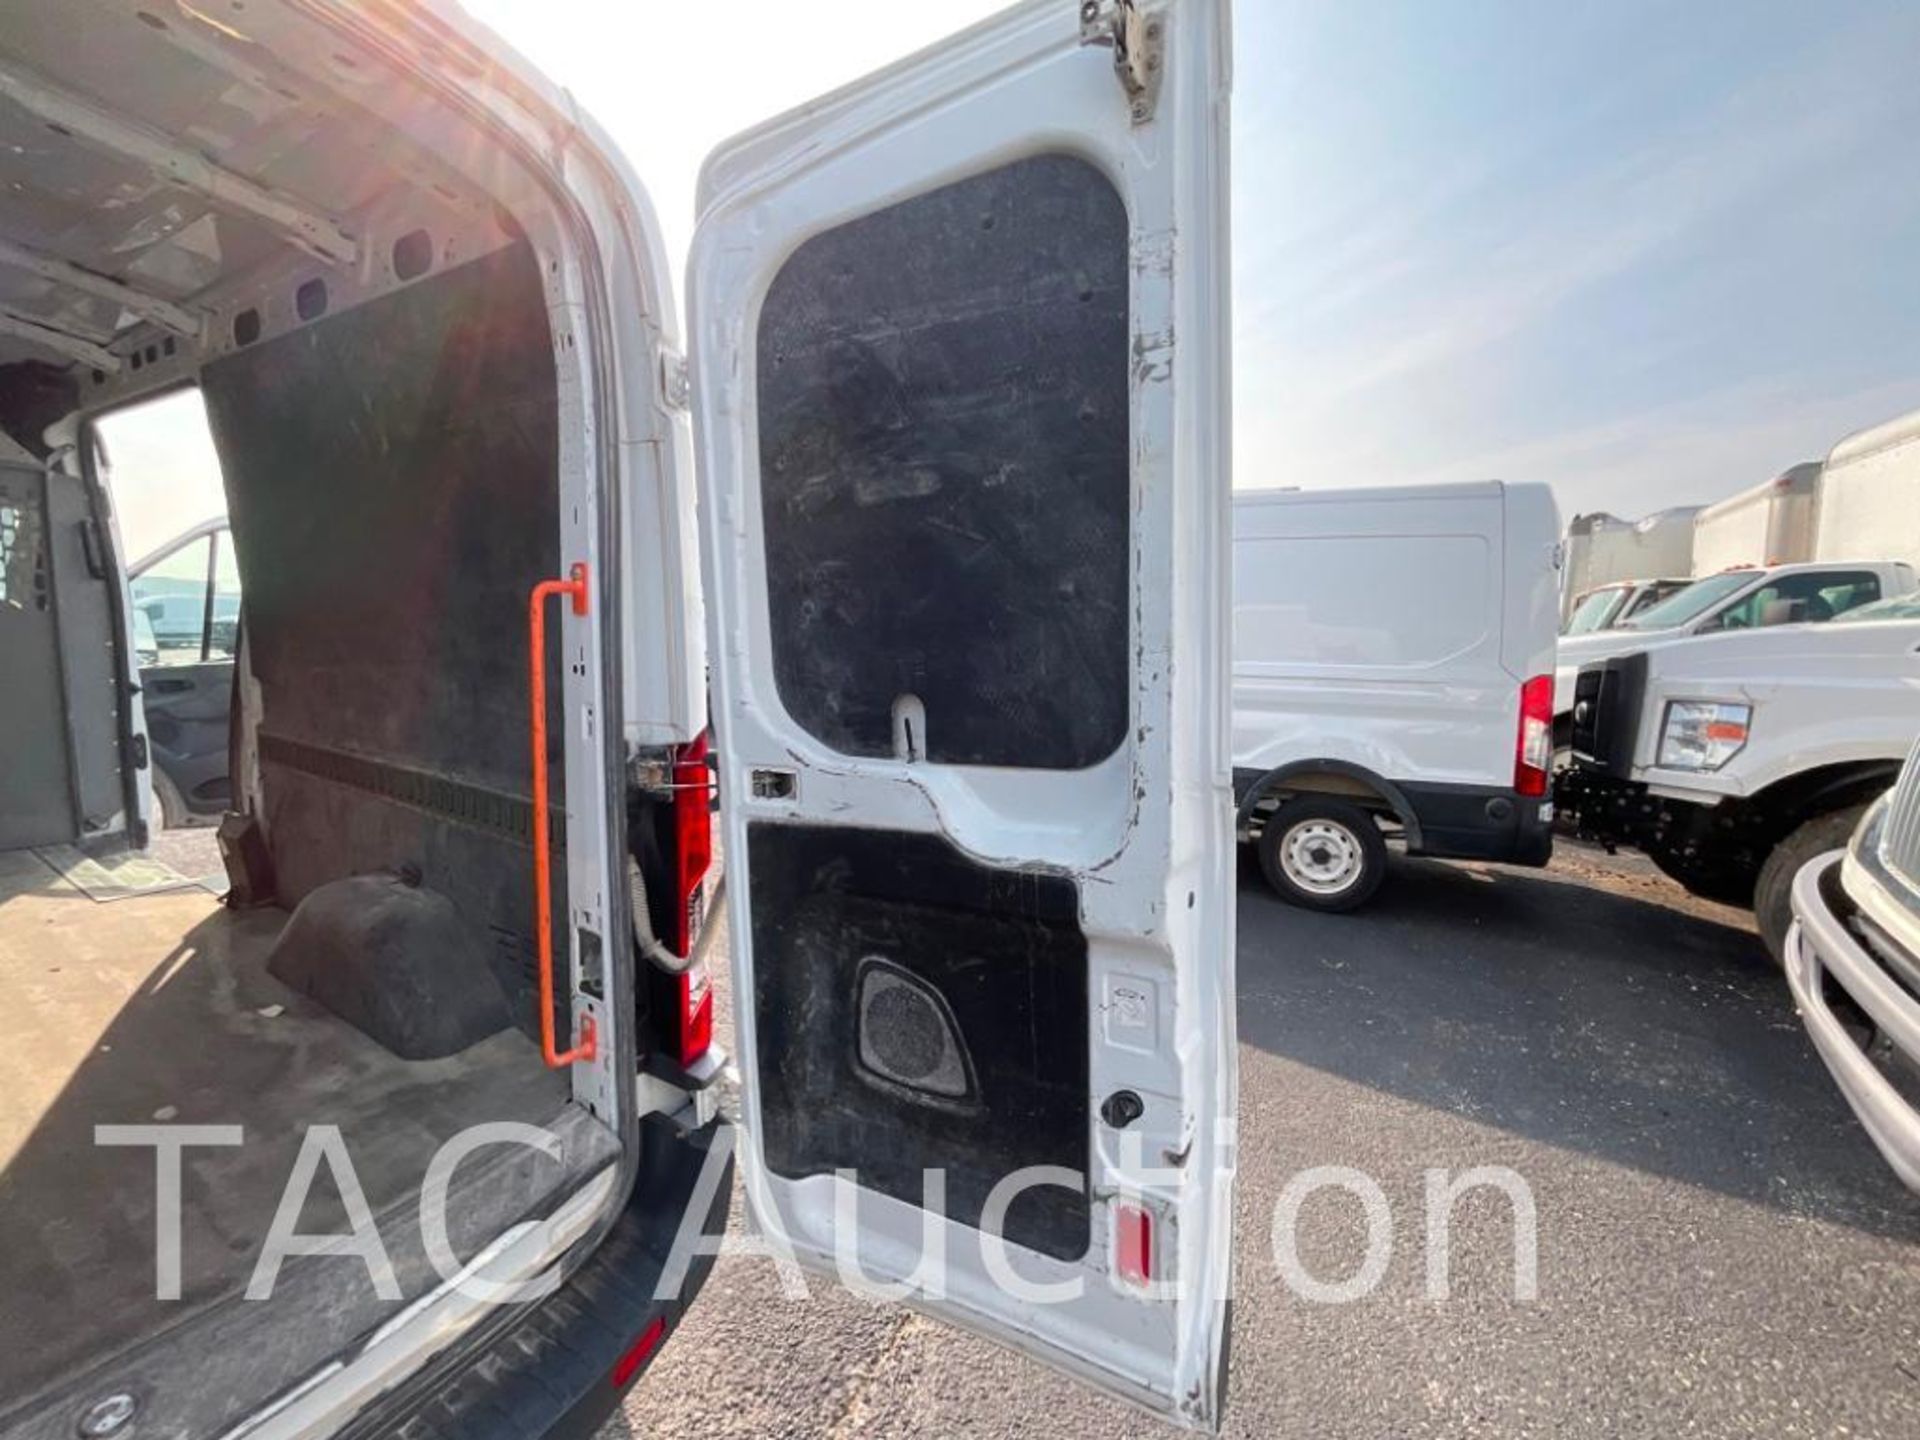 2017 Ford Transit 150 Cargo Van - Image 27 of 49